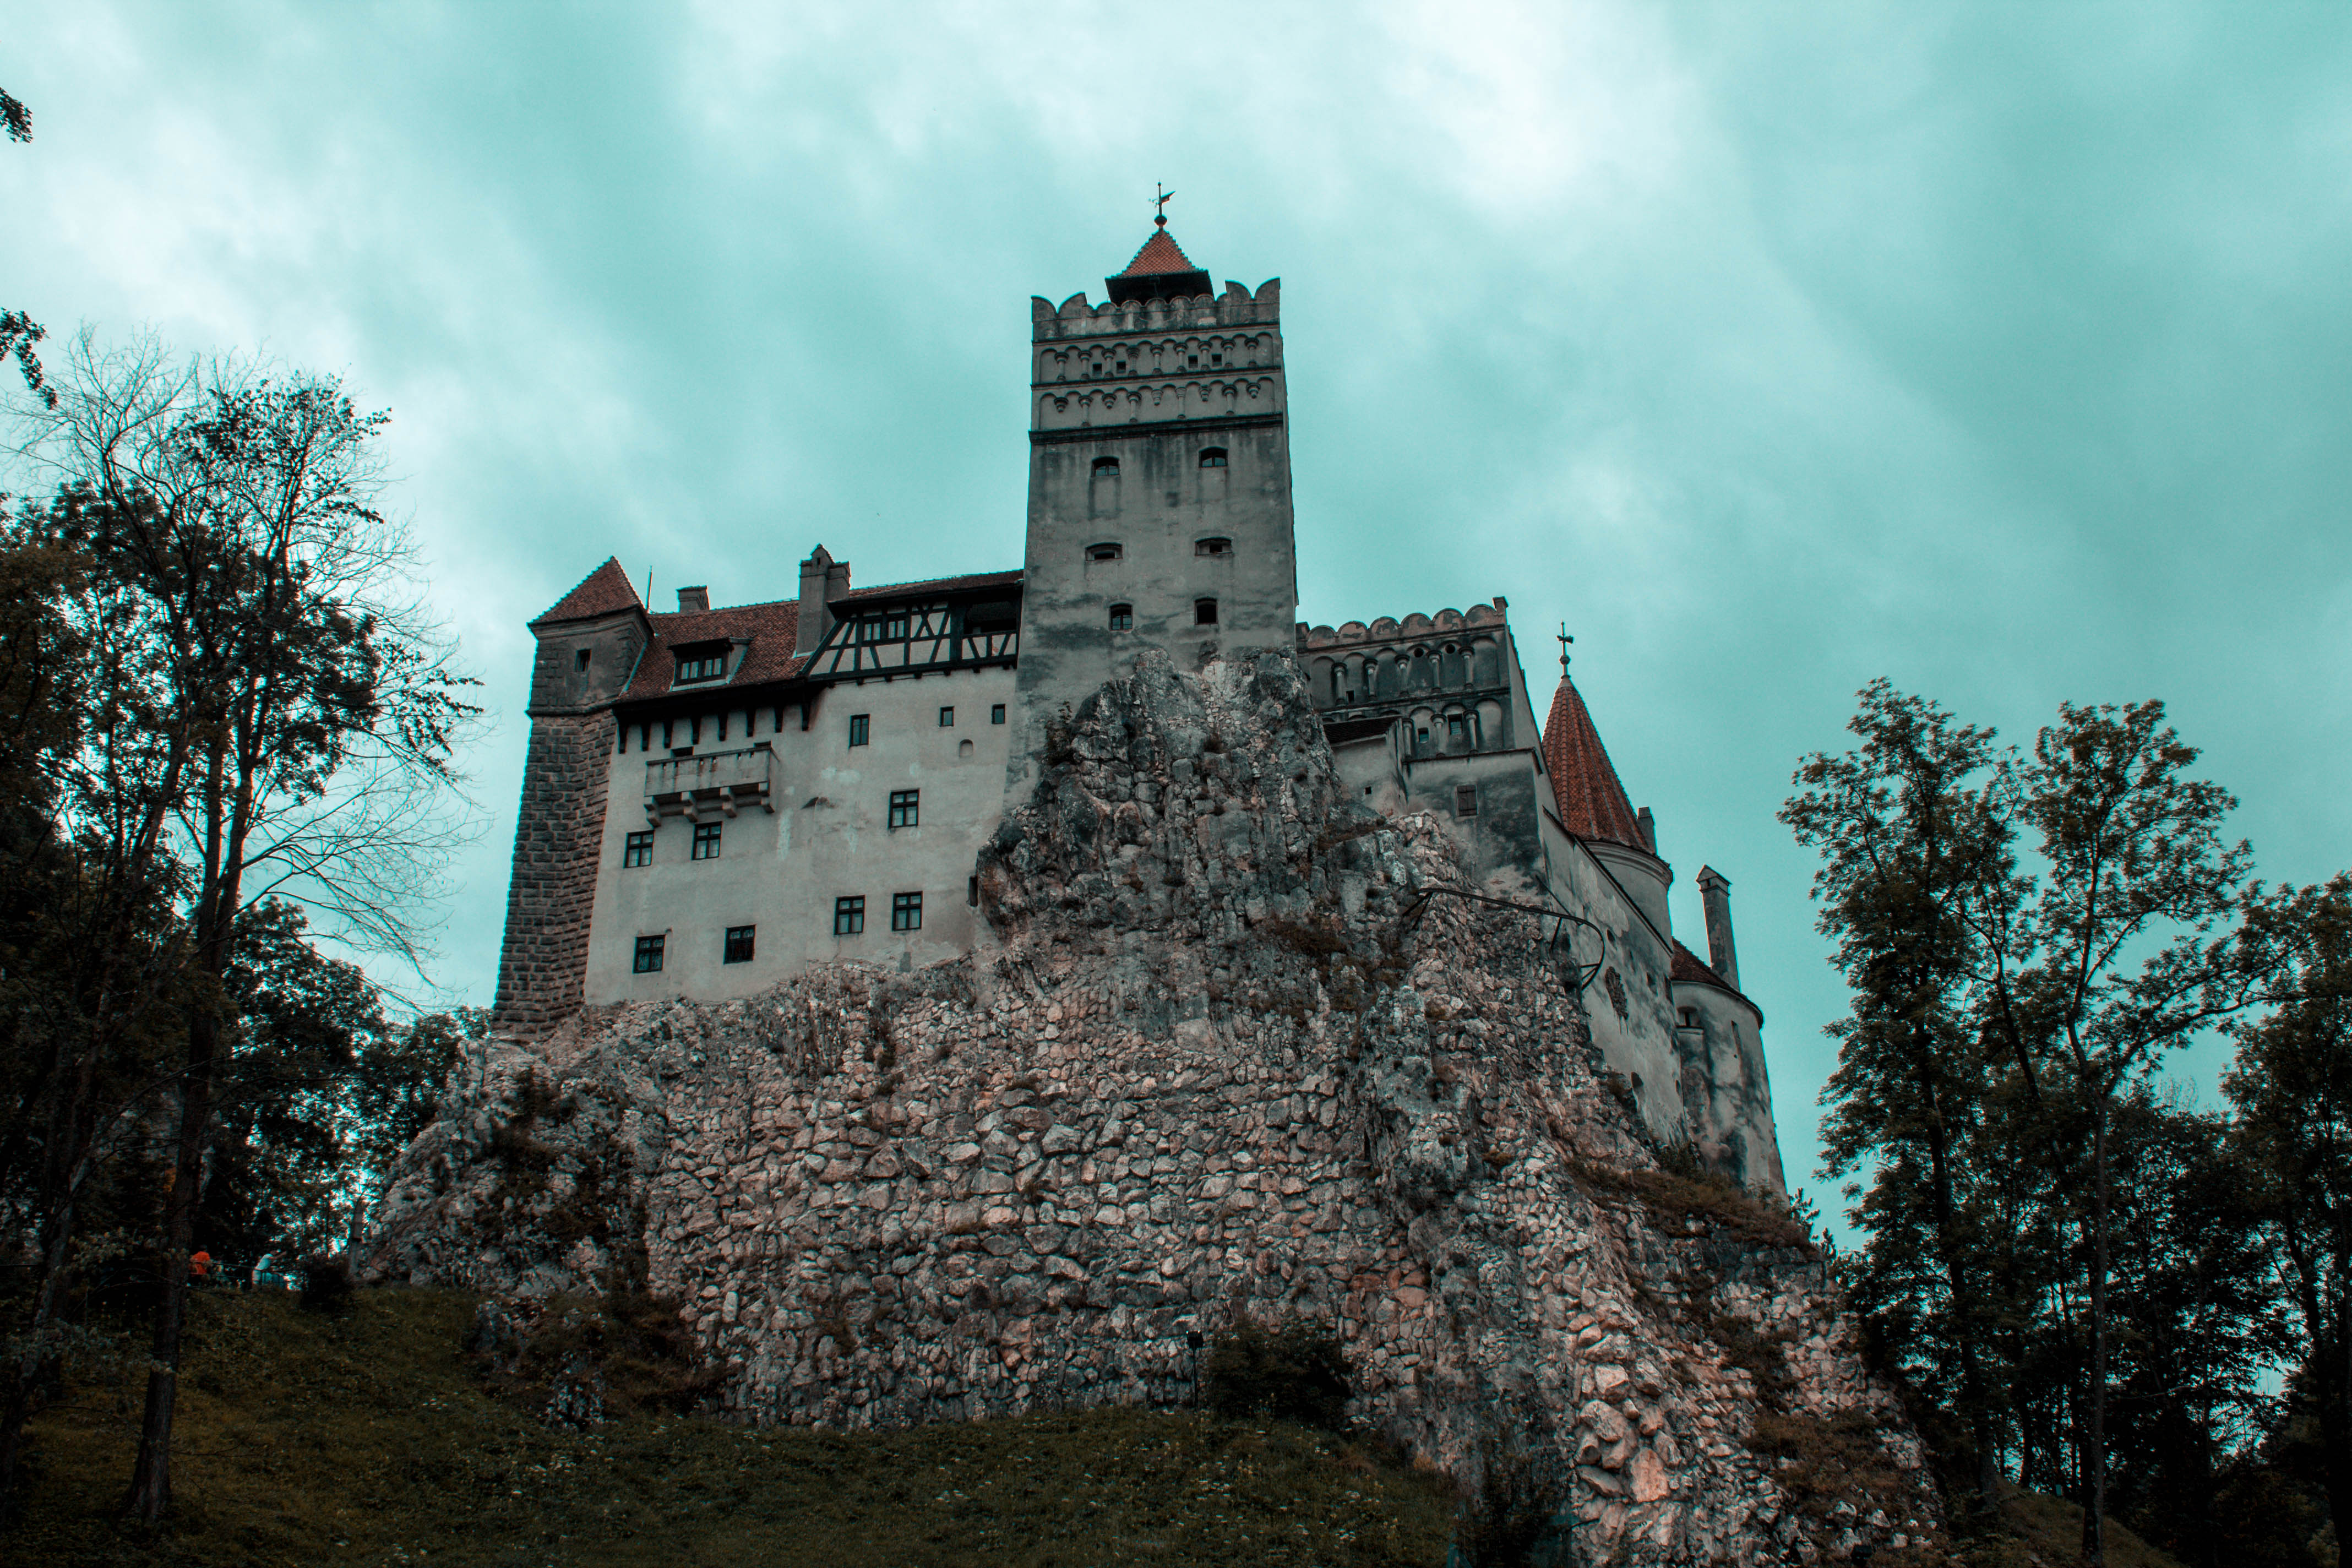 Трансильвания где это находится. Трансильвания Румыния замок Дракулы. Замок Влада Цепеша. Влад Цепеш замок Дракулы. Замок Бран Влада Цепеша в Румынии.